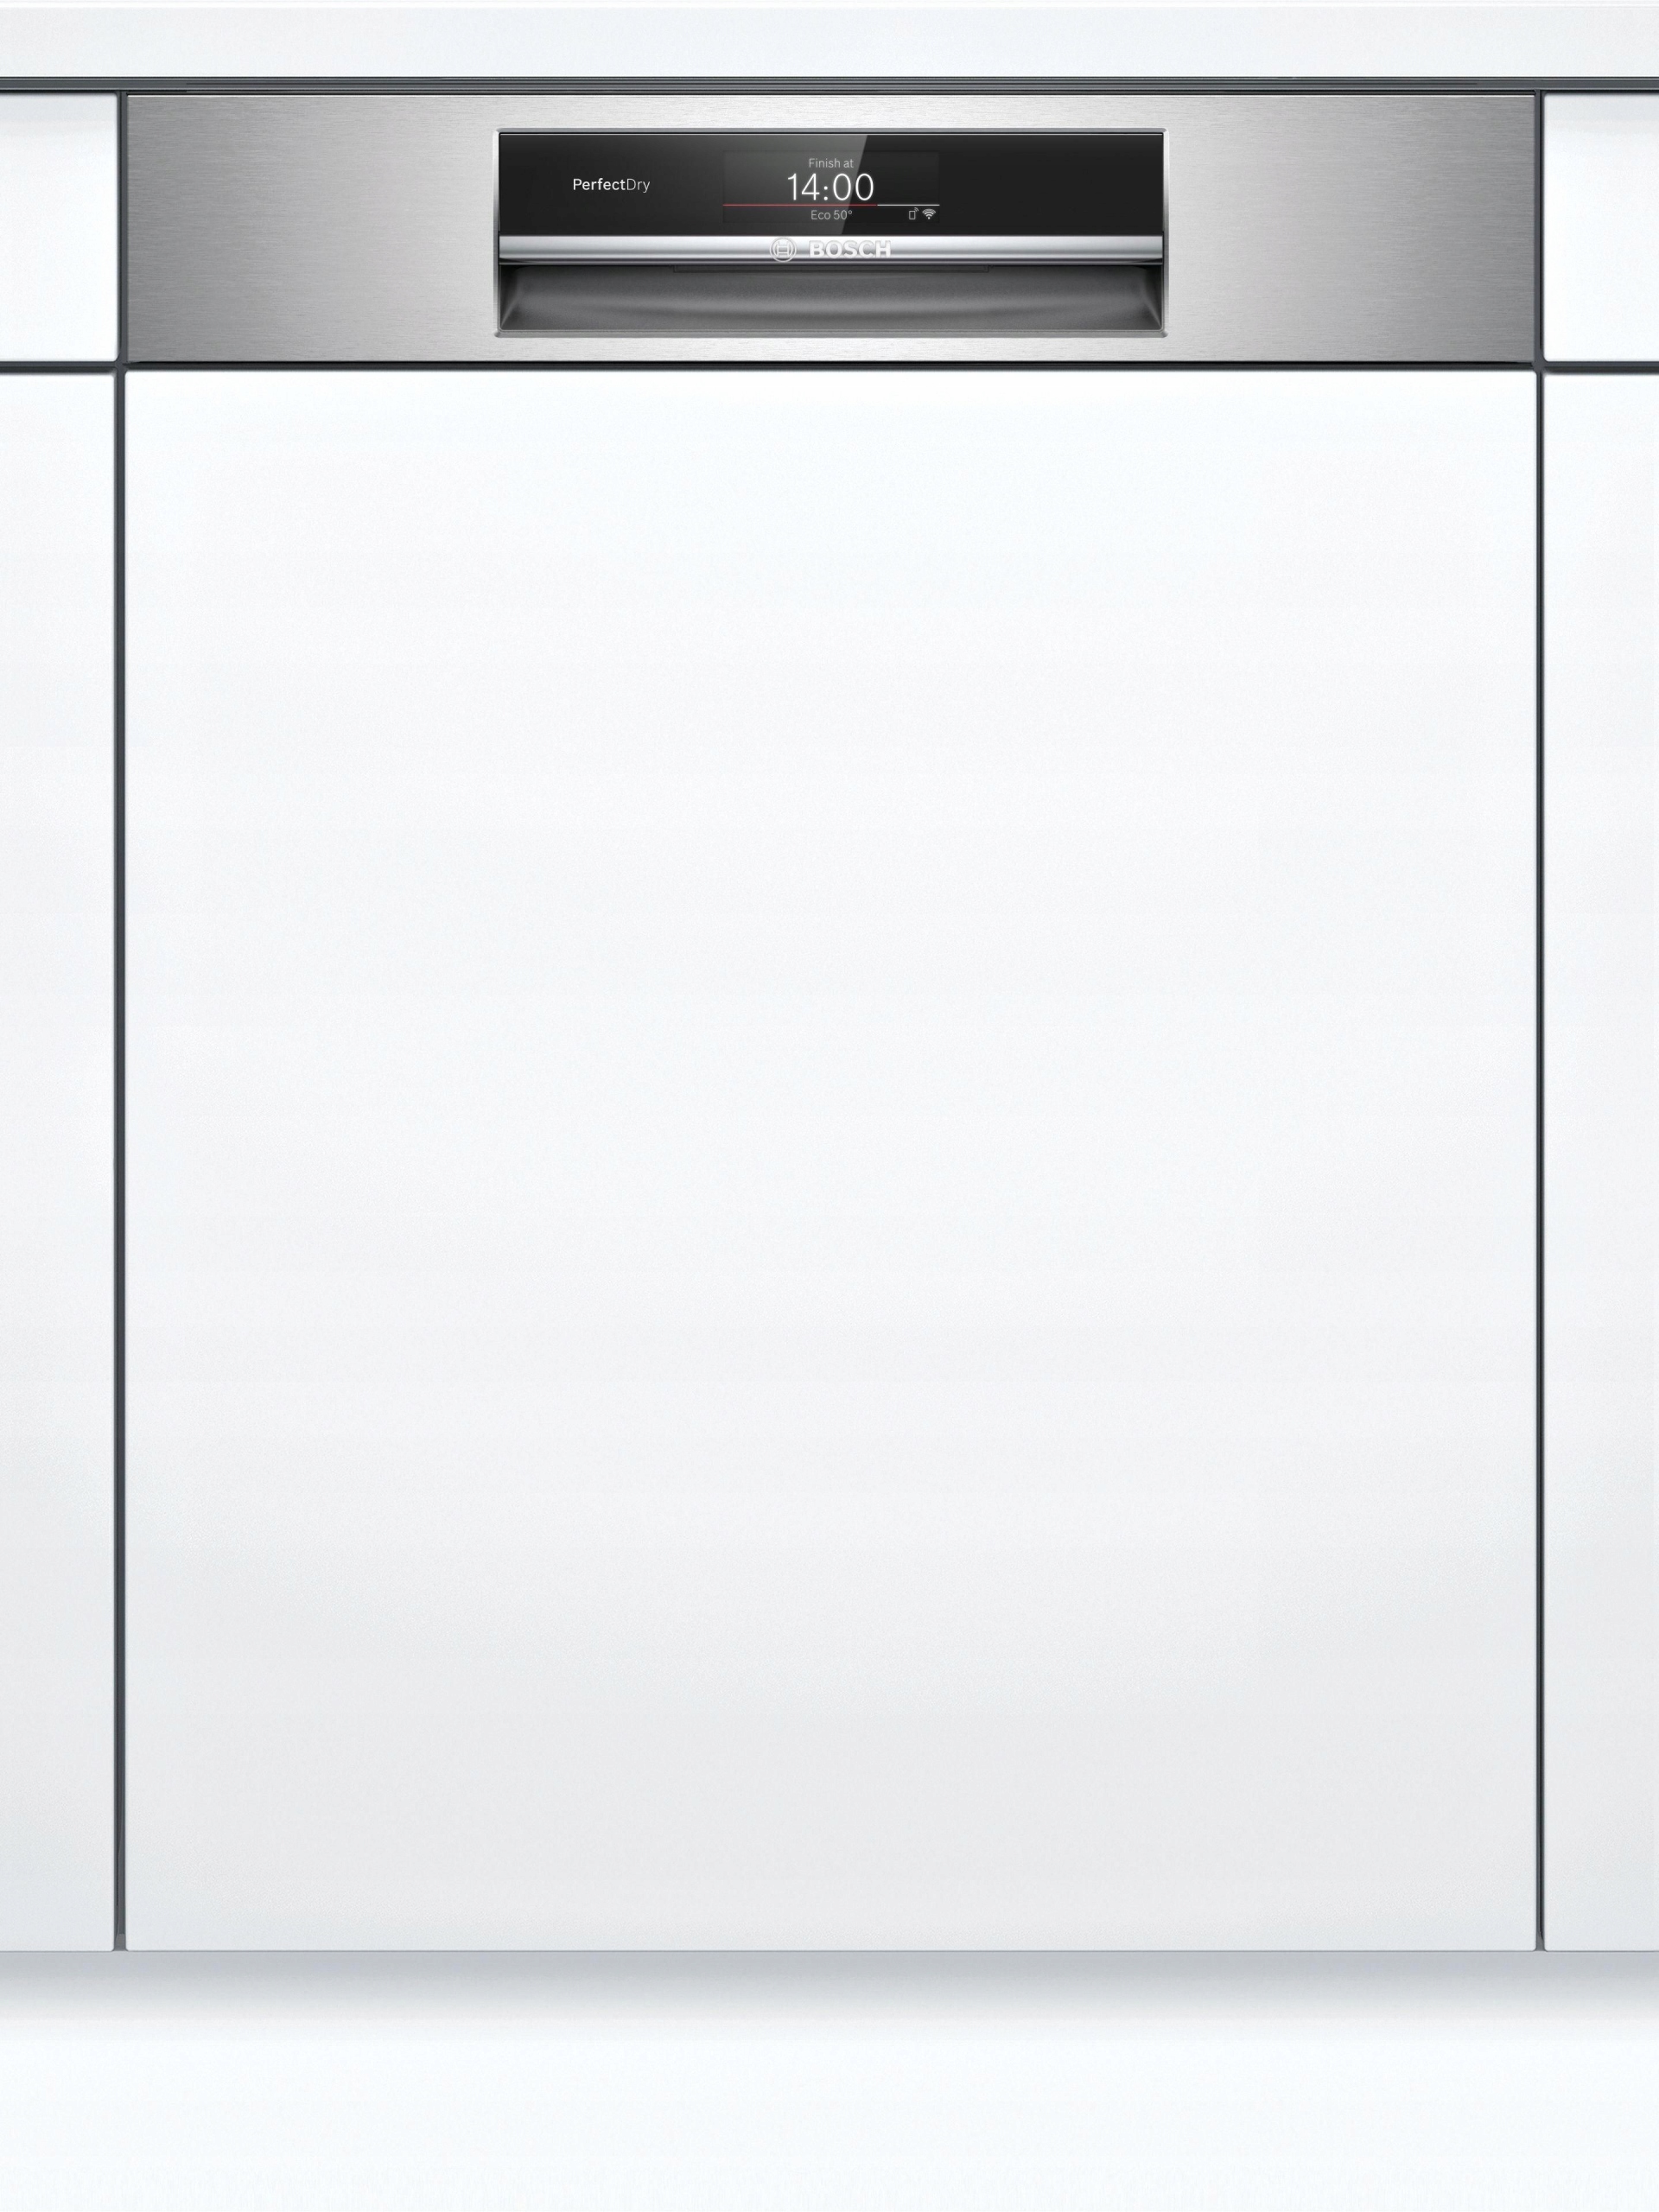 Встраиваемые посудомоечные бош 60 см купить. Посудомоечная машина Bosch SMI 25as02 e. Встраиваемая посудомоечная машина Bosch smi50d05tr. Посудомоечная машина Bosch SPI 69t35. Посудомоечная машина Siemens SN 536s03 ie.